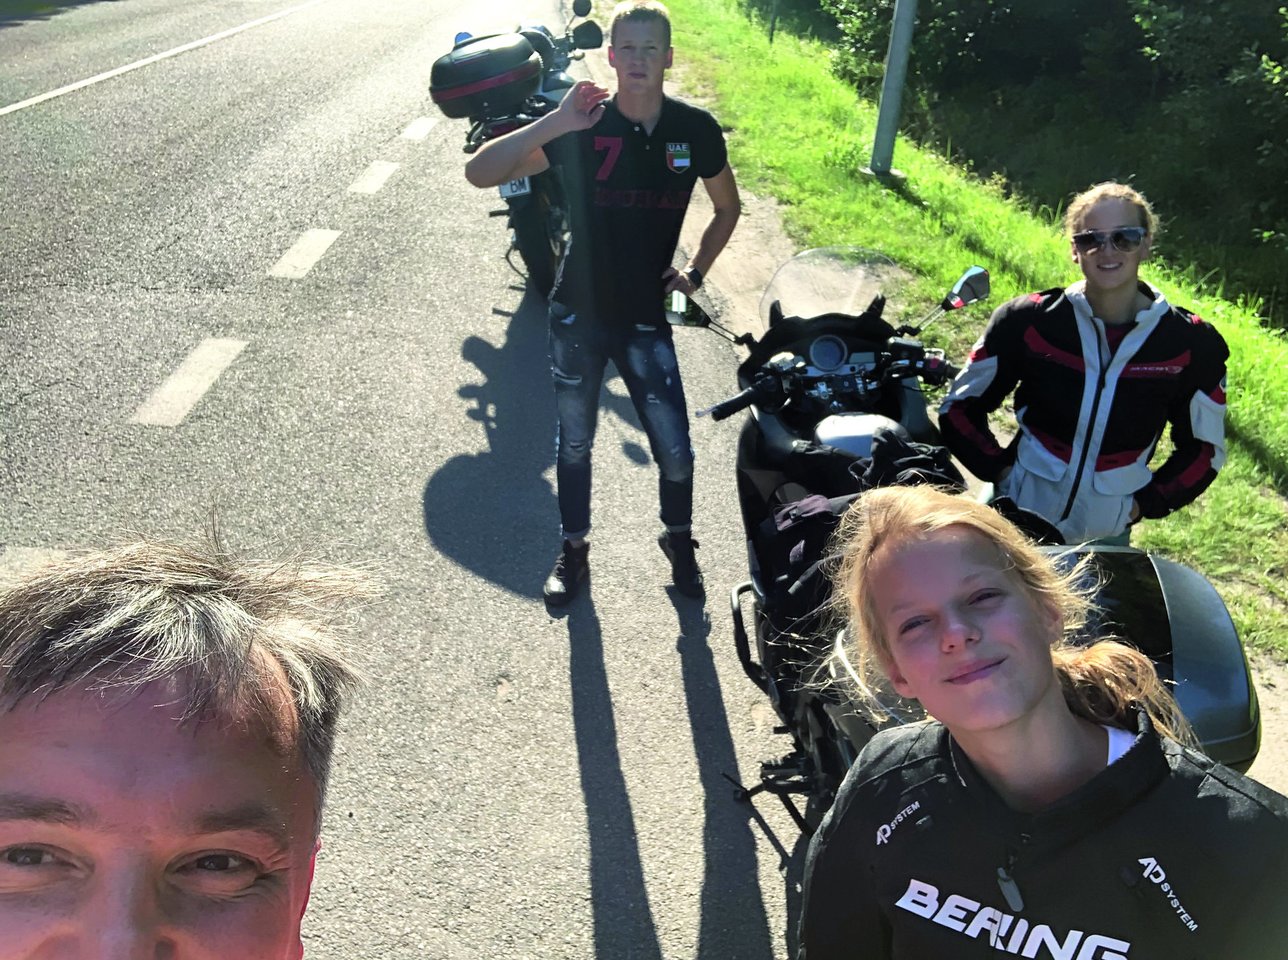 Keliones motociklais po Lietuvą mėgo profesoriaus A.Maco sūnus Jonas, dukros Rusnė Teresė ir Gertrūda.<br>Nuotr. iš asmeninio albumo.